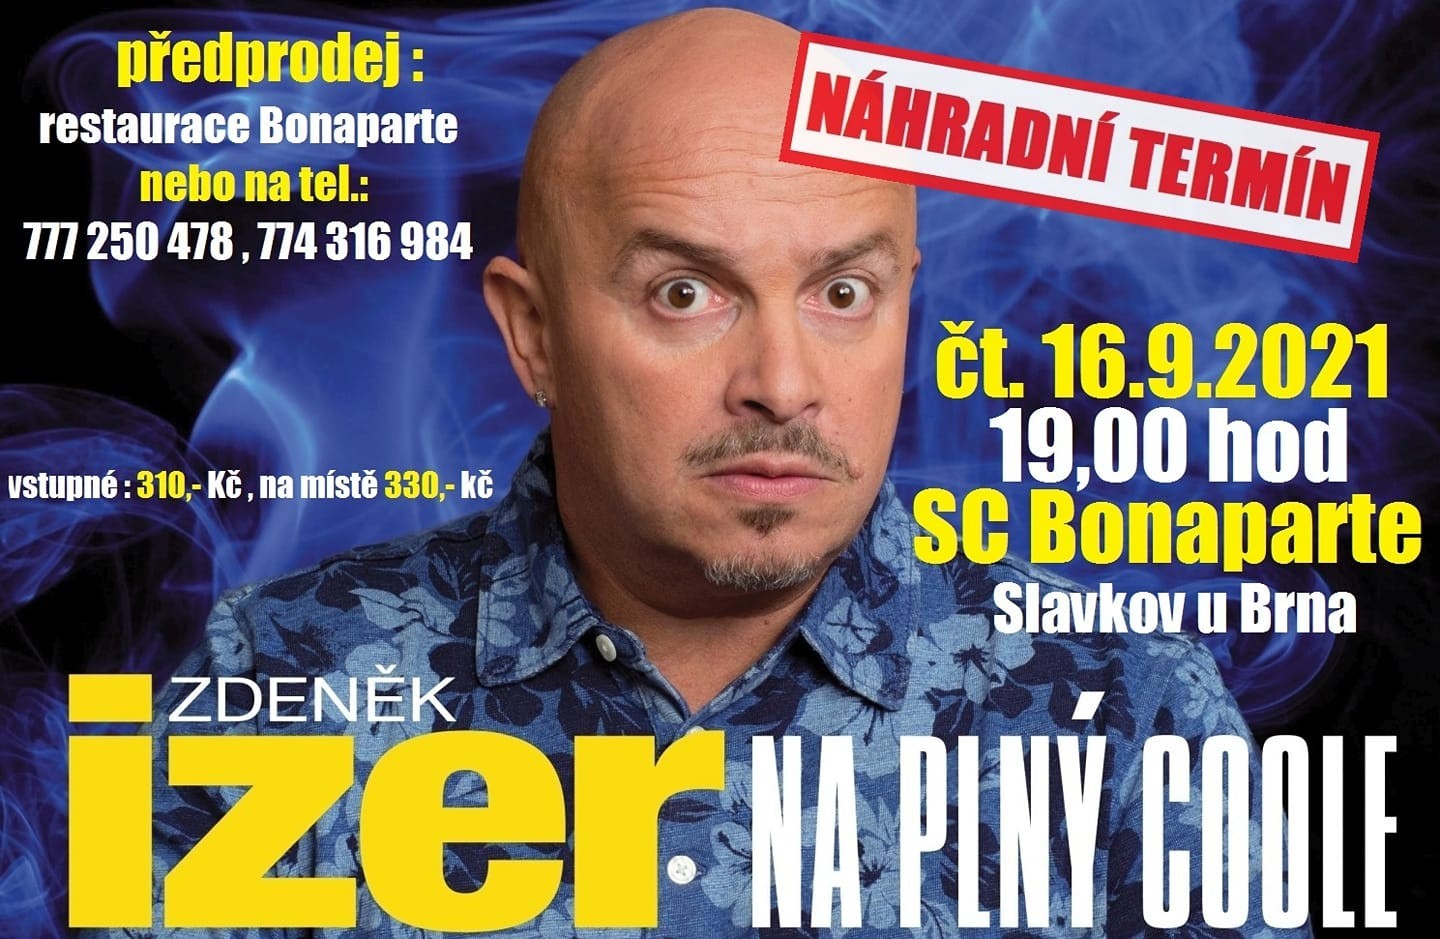 Zdeněk Izer - "Na plný coole" 